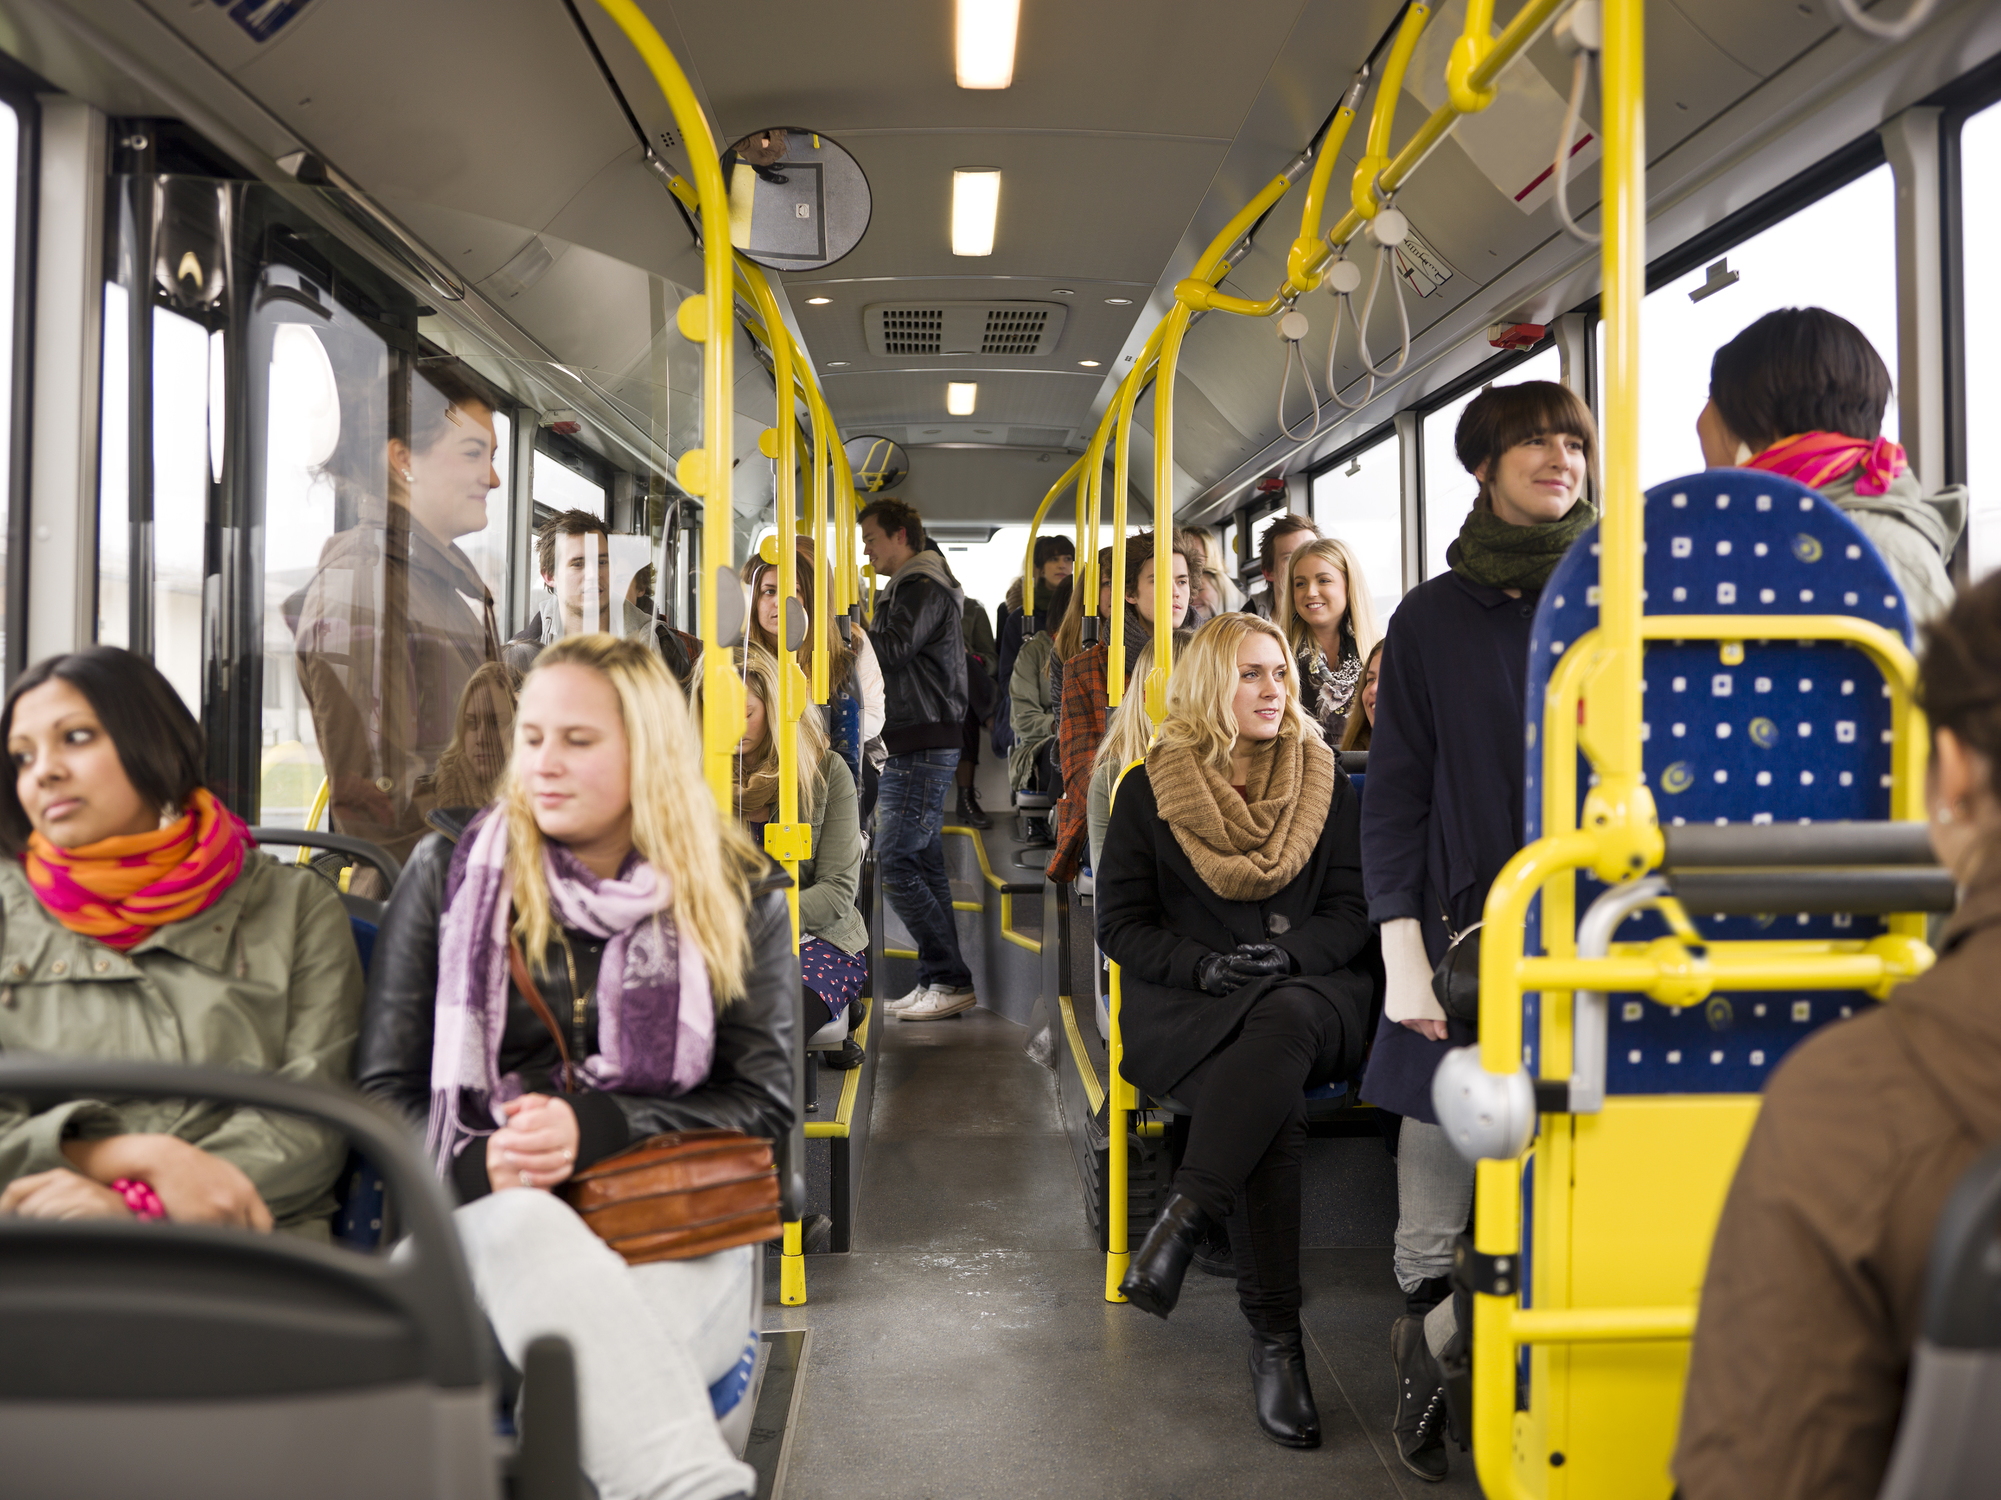 Происходит на общественном транспорте. Люди в автобусе. Автобус внутри с людьми. Пассажиры в автобусе. Пассажиры в маршрутке.